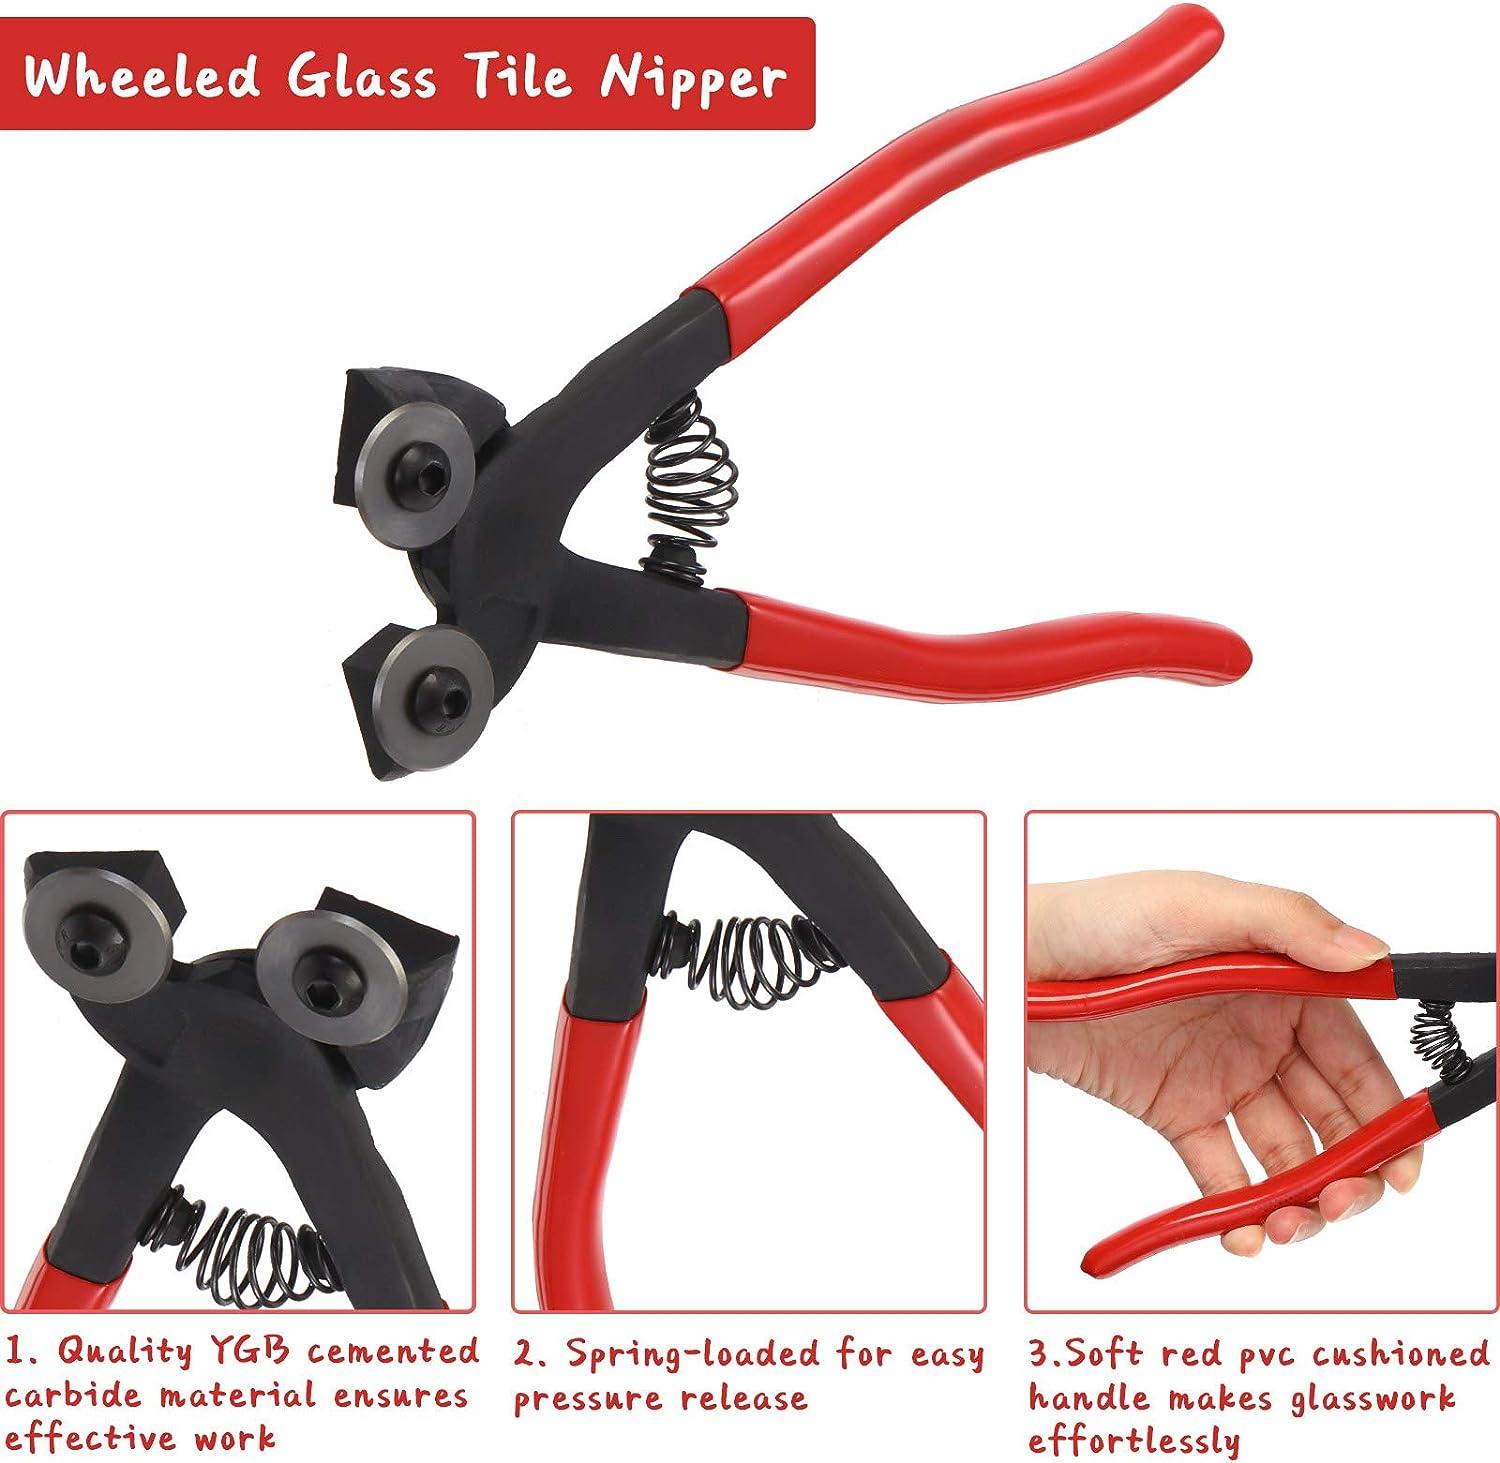 Wheeled Glass Nippers